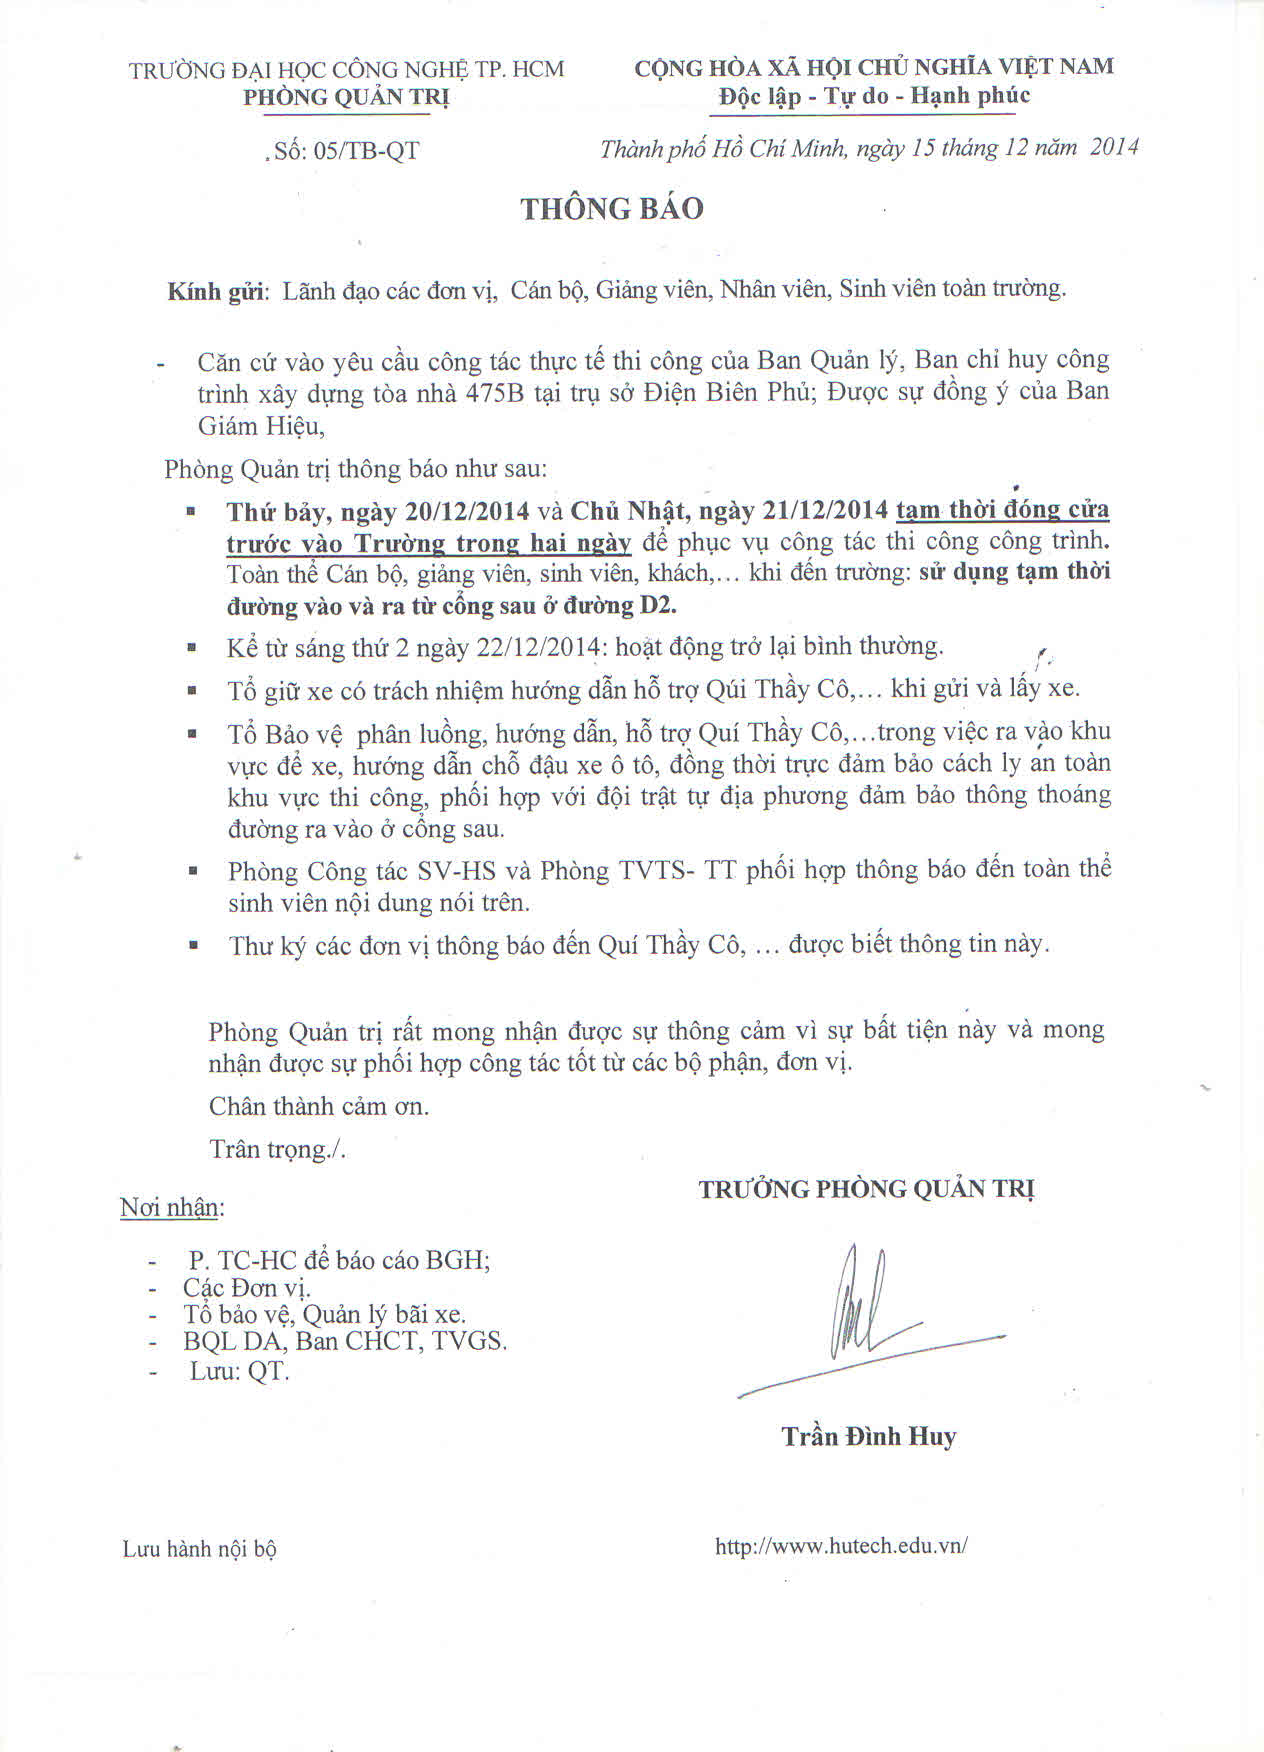 Thông báo 05/TB-QT về việc tạm thời đóng cửa trước vào Trường tại cơ sở 475A, Điện Biên Phủ trong 2  3